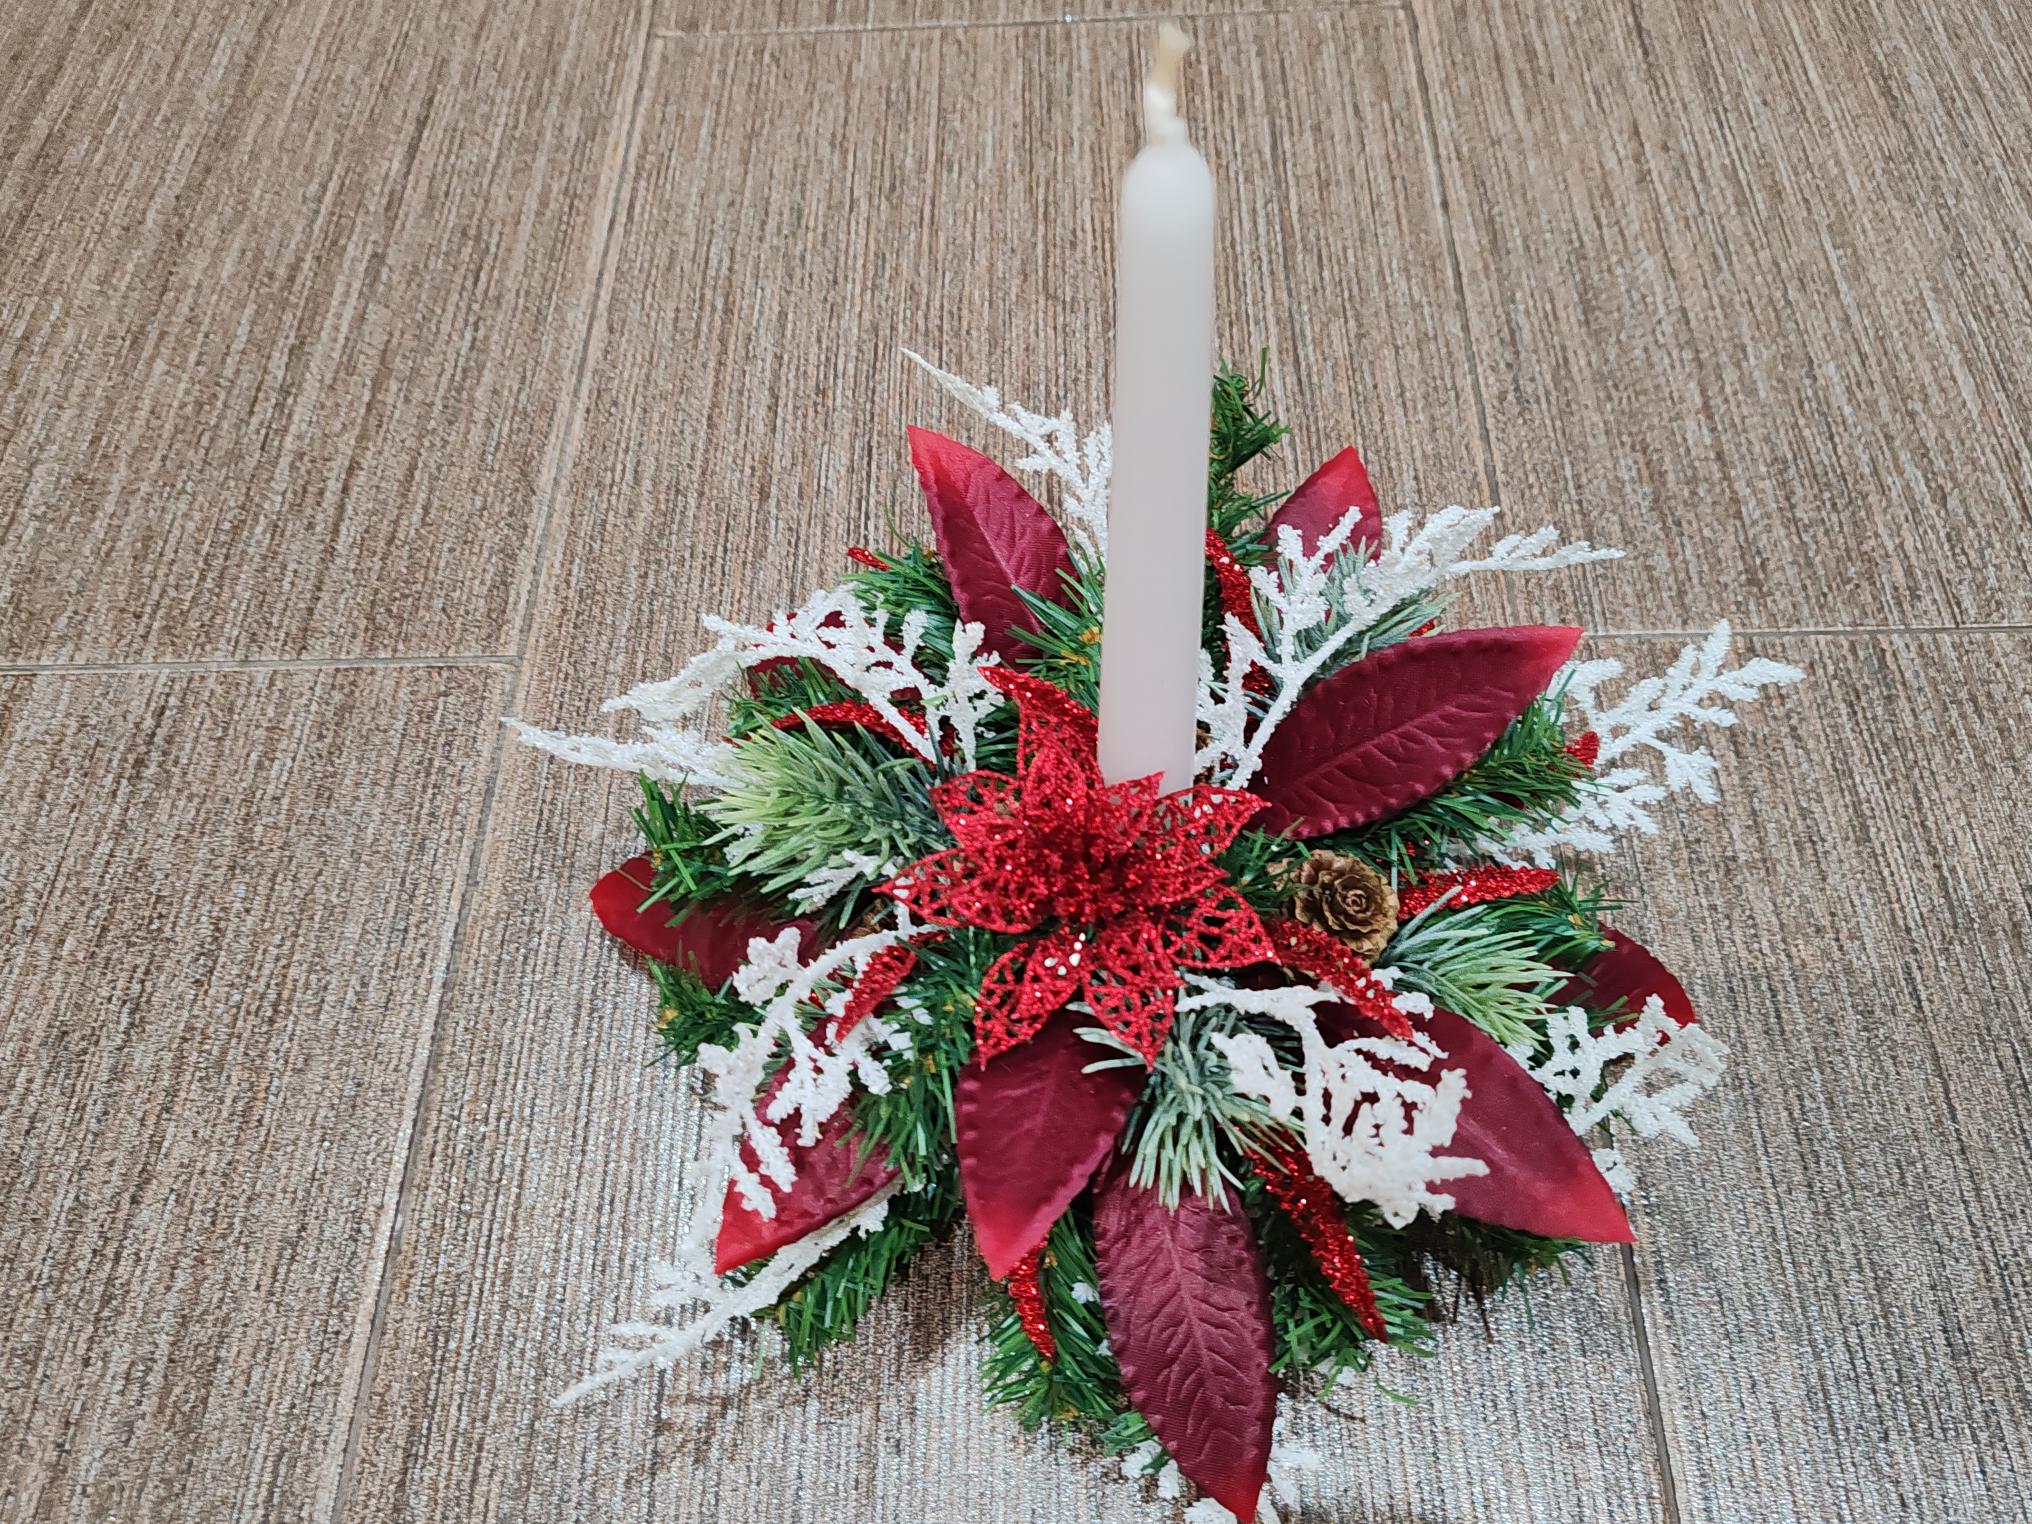 Vánoční svícen s bílou svící a červenou vánoční hvězdou